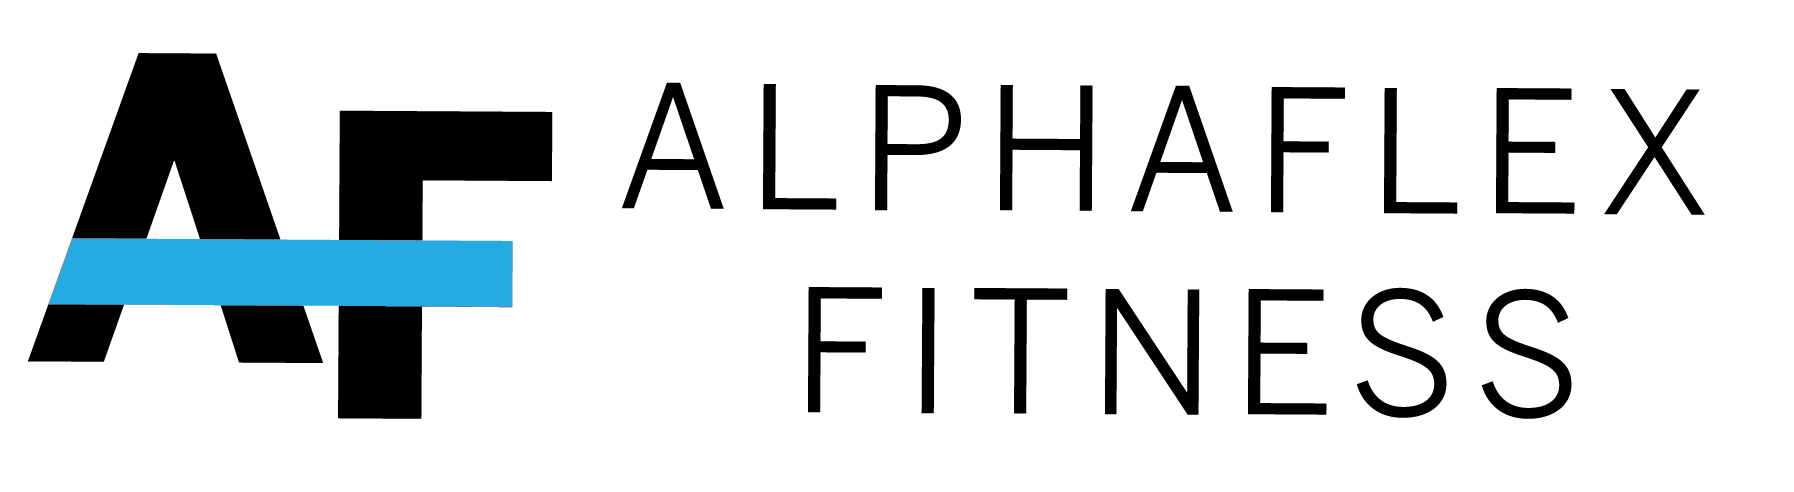 Alphaflex Fitness